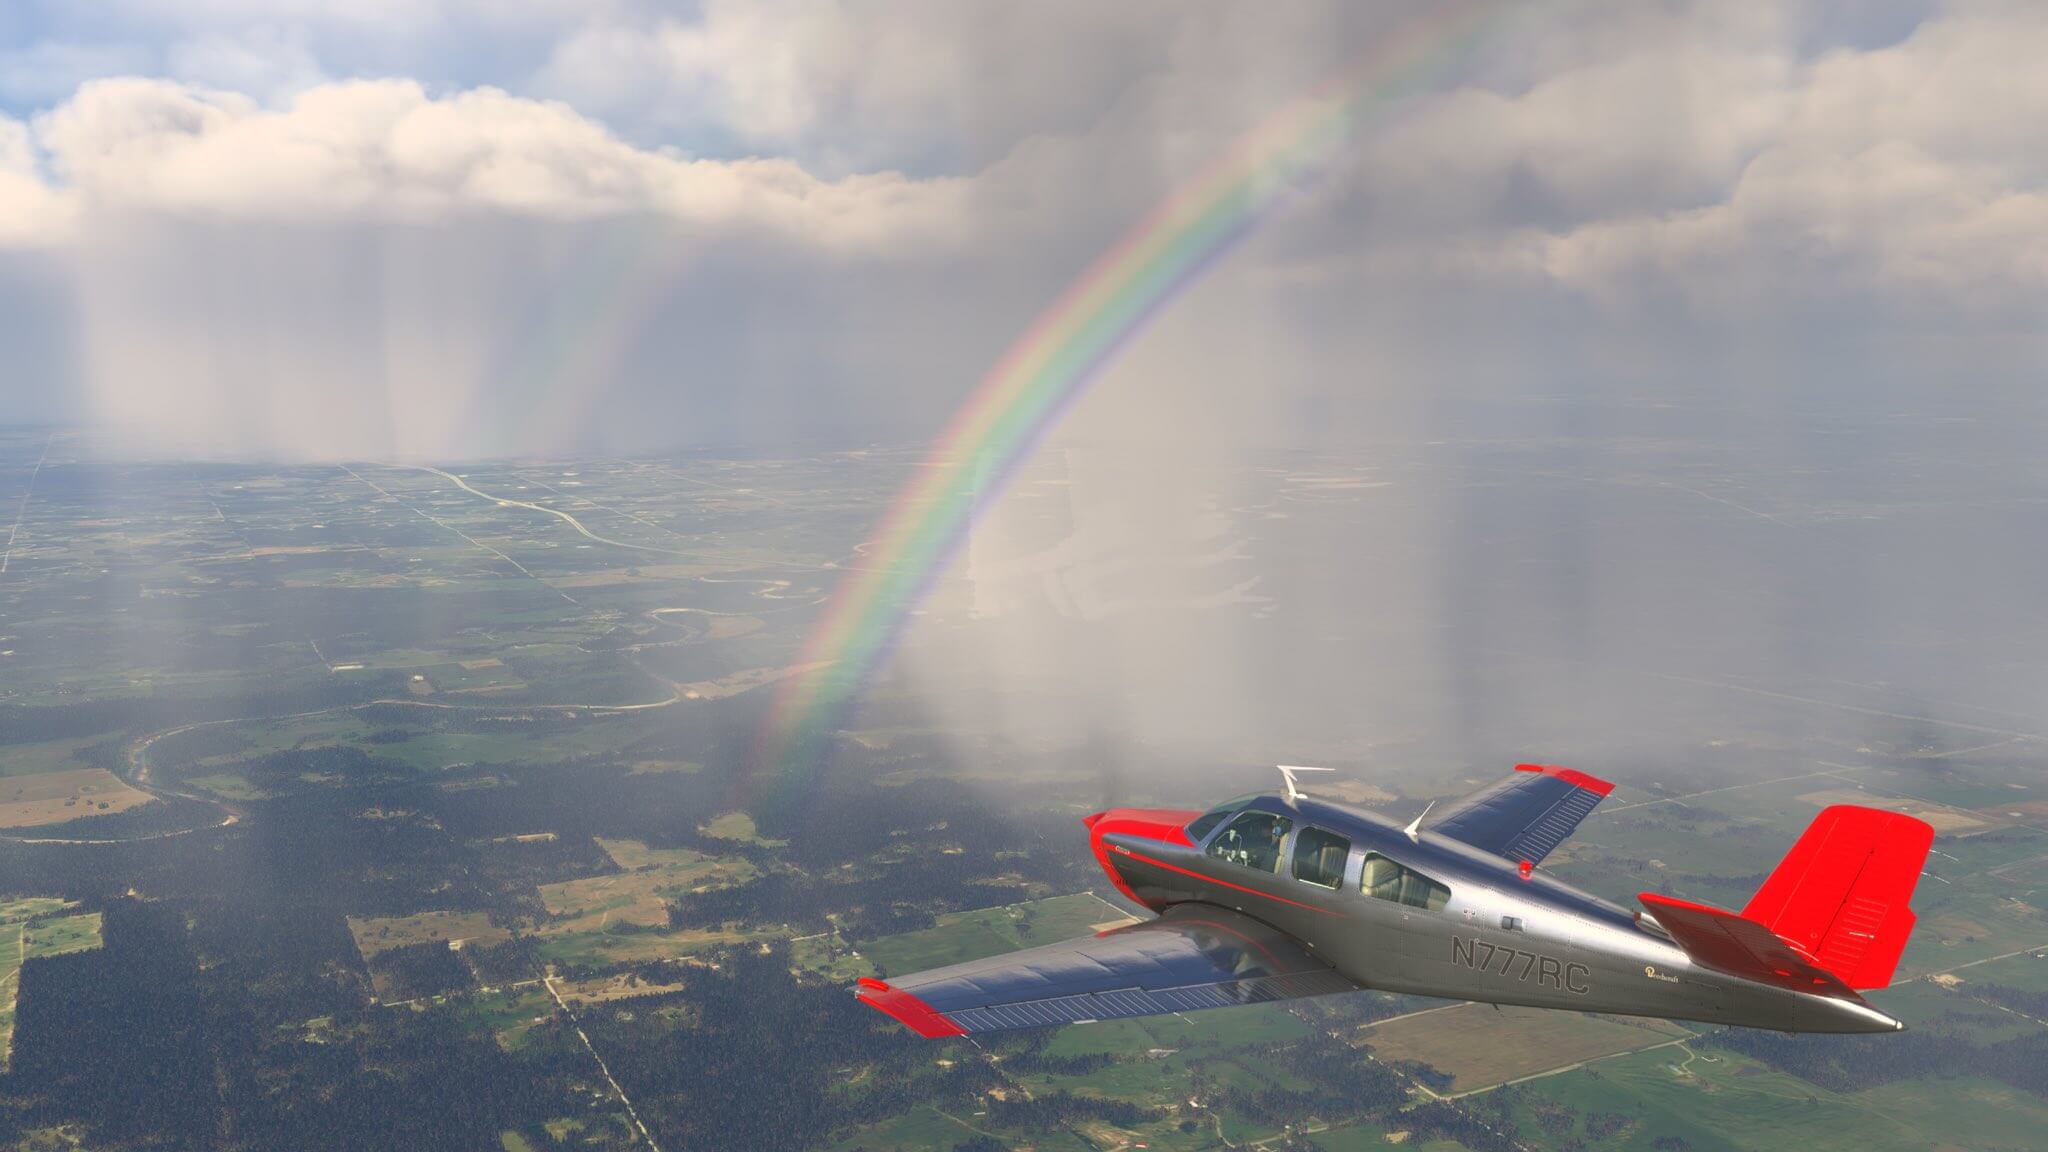 A propeller GA aircraft avoids rain ahead, with a rainbow in view.